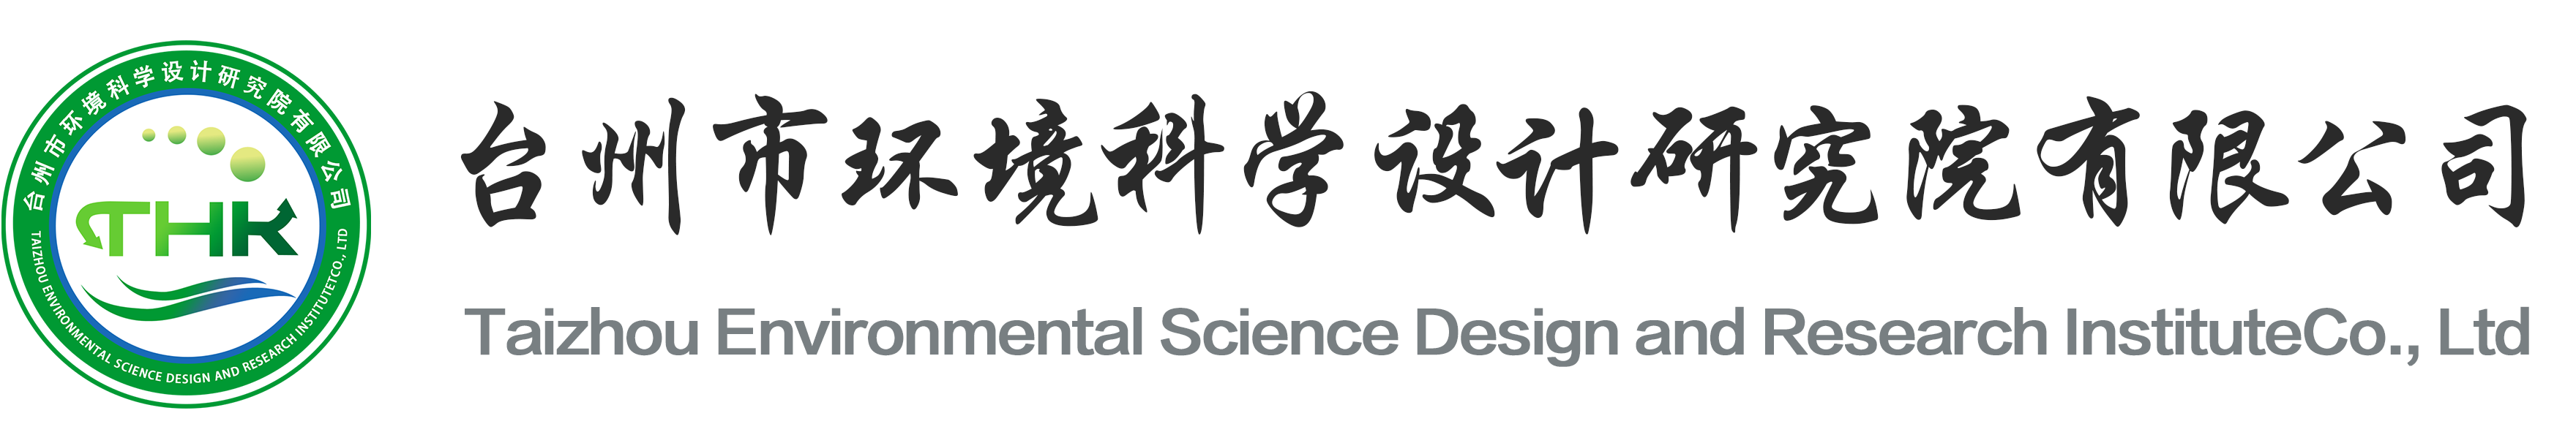 台州市环境科学设计研究院有限公司